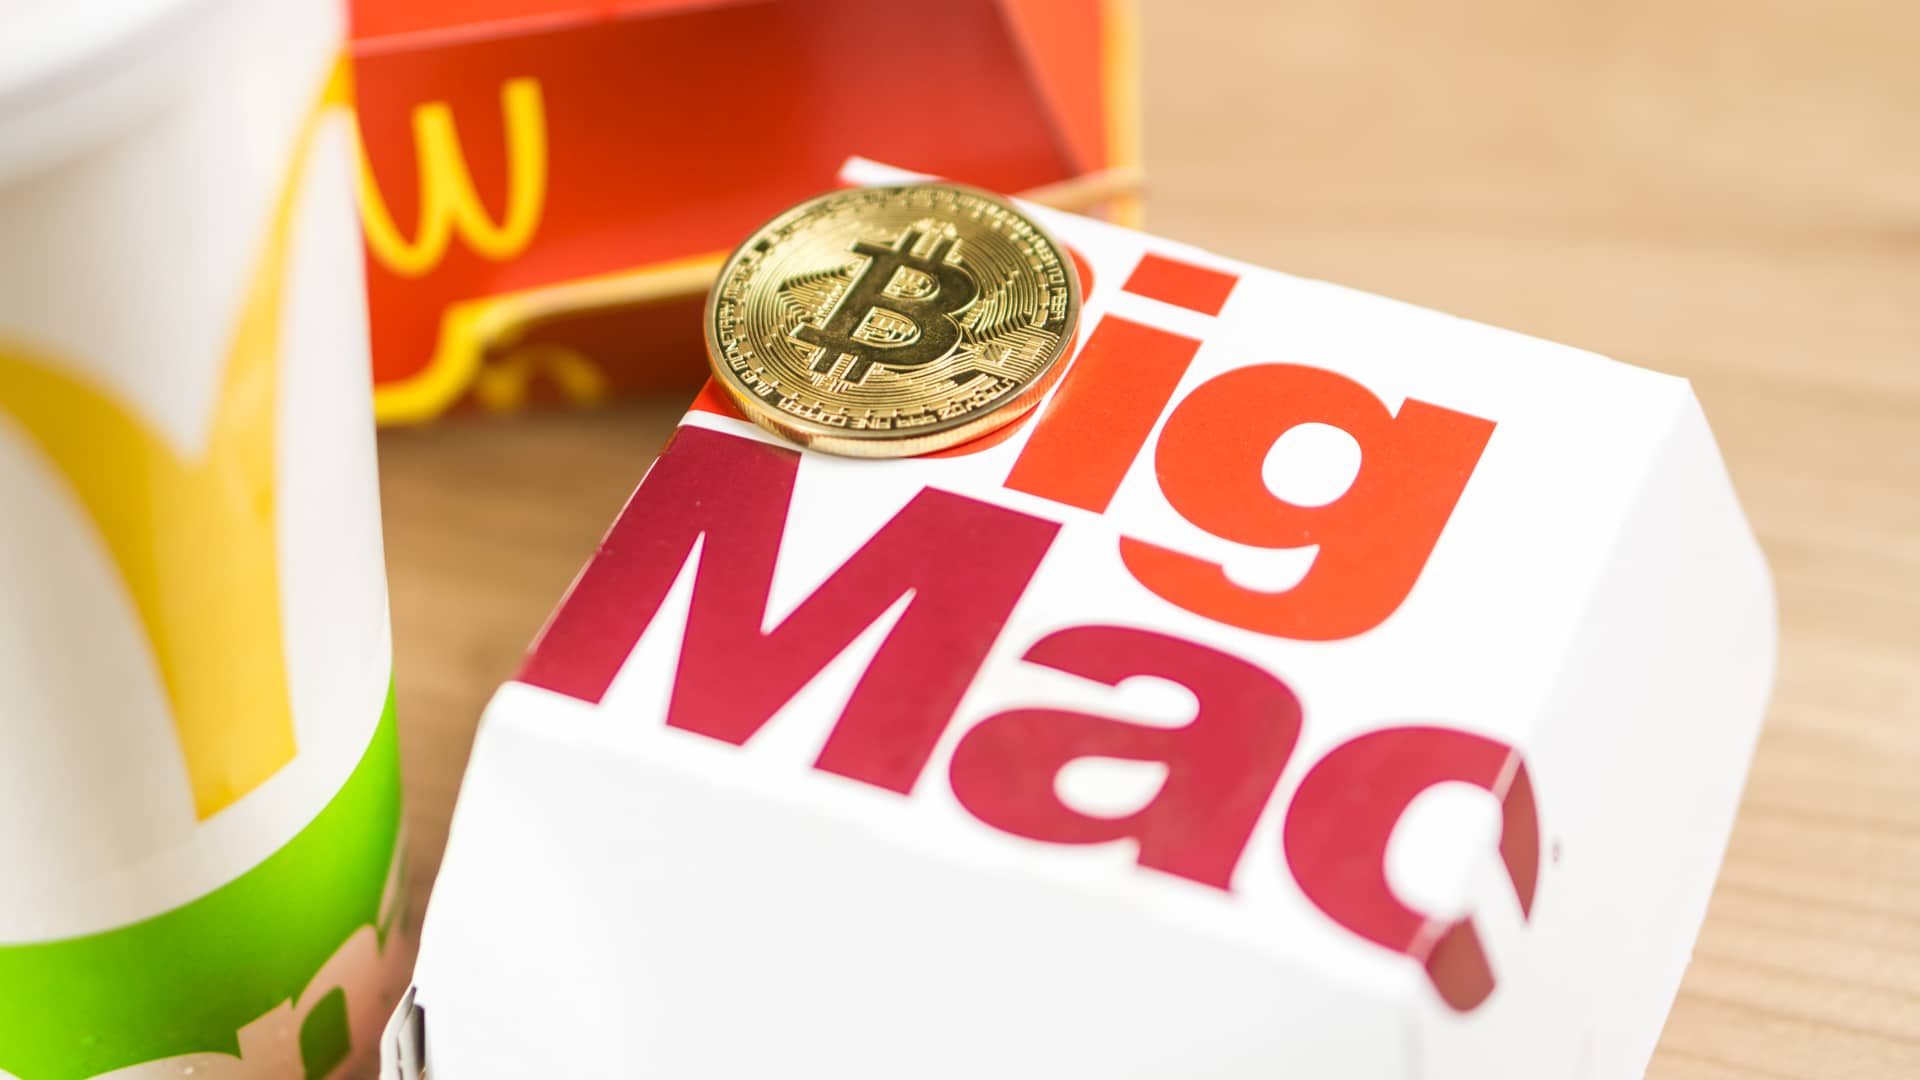 mcdonalds bitcoin